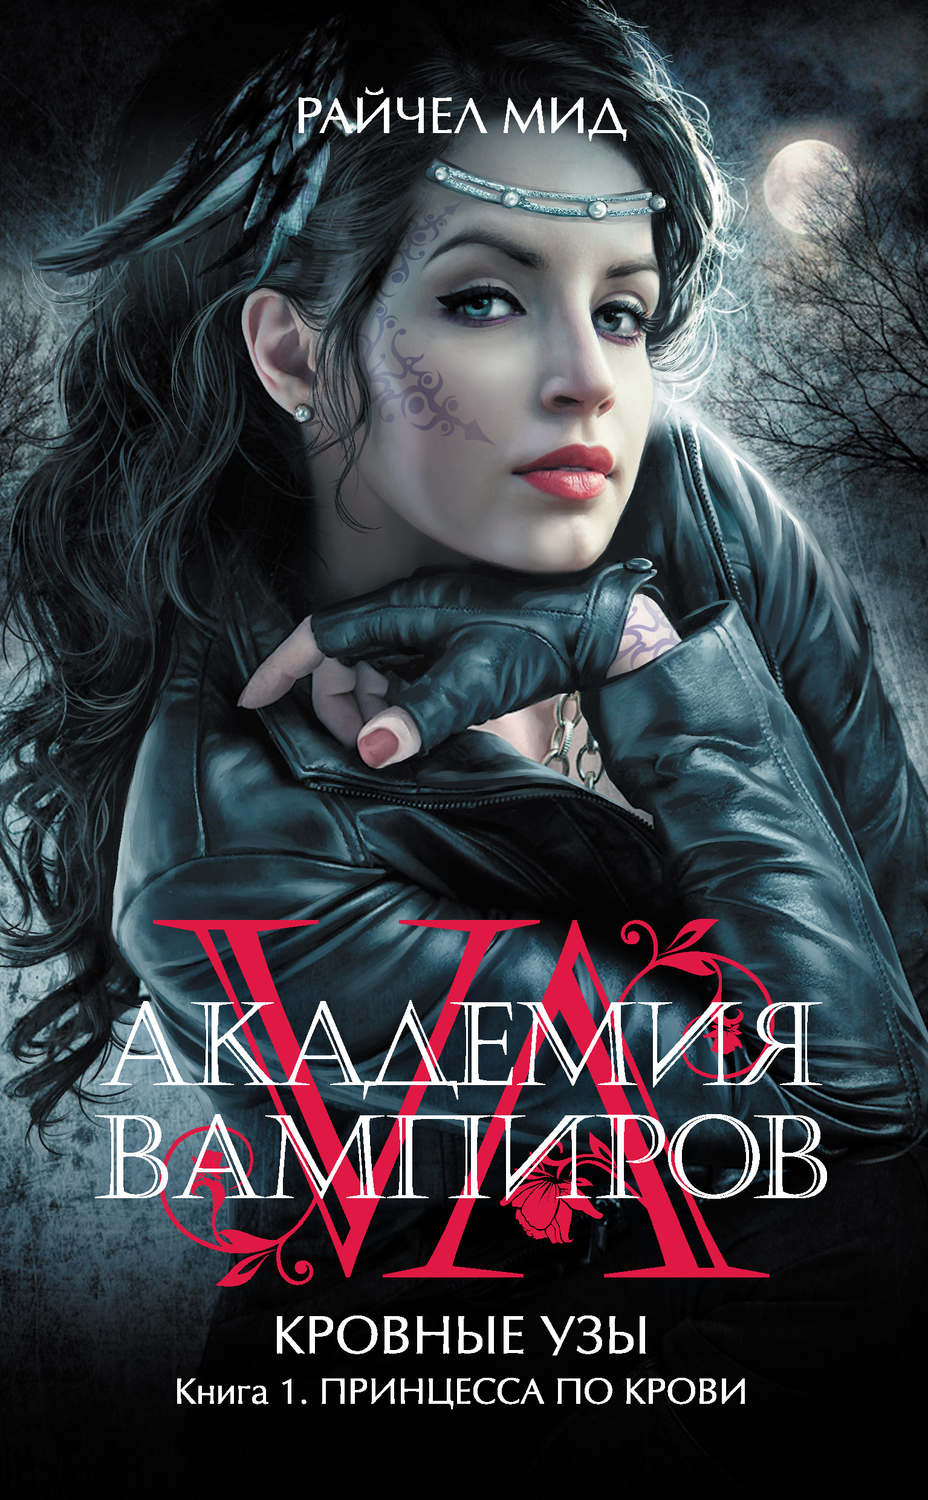 Академия вампиров книга 6 скачать бесплатно fb2